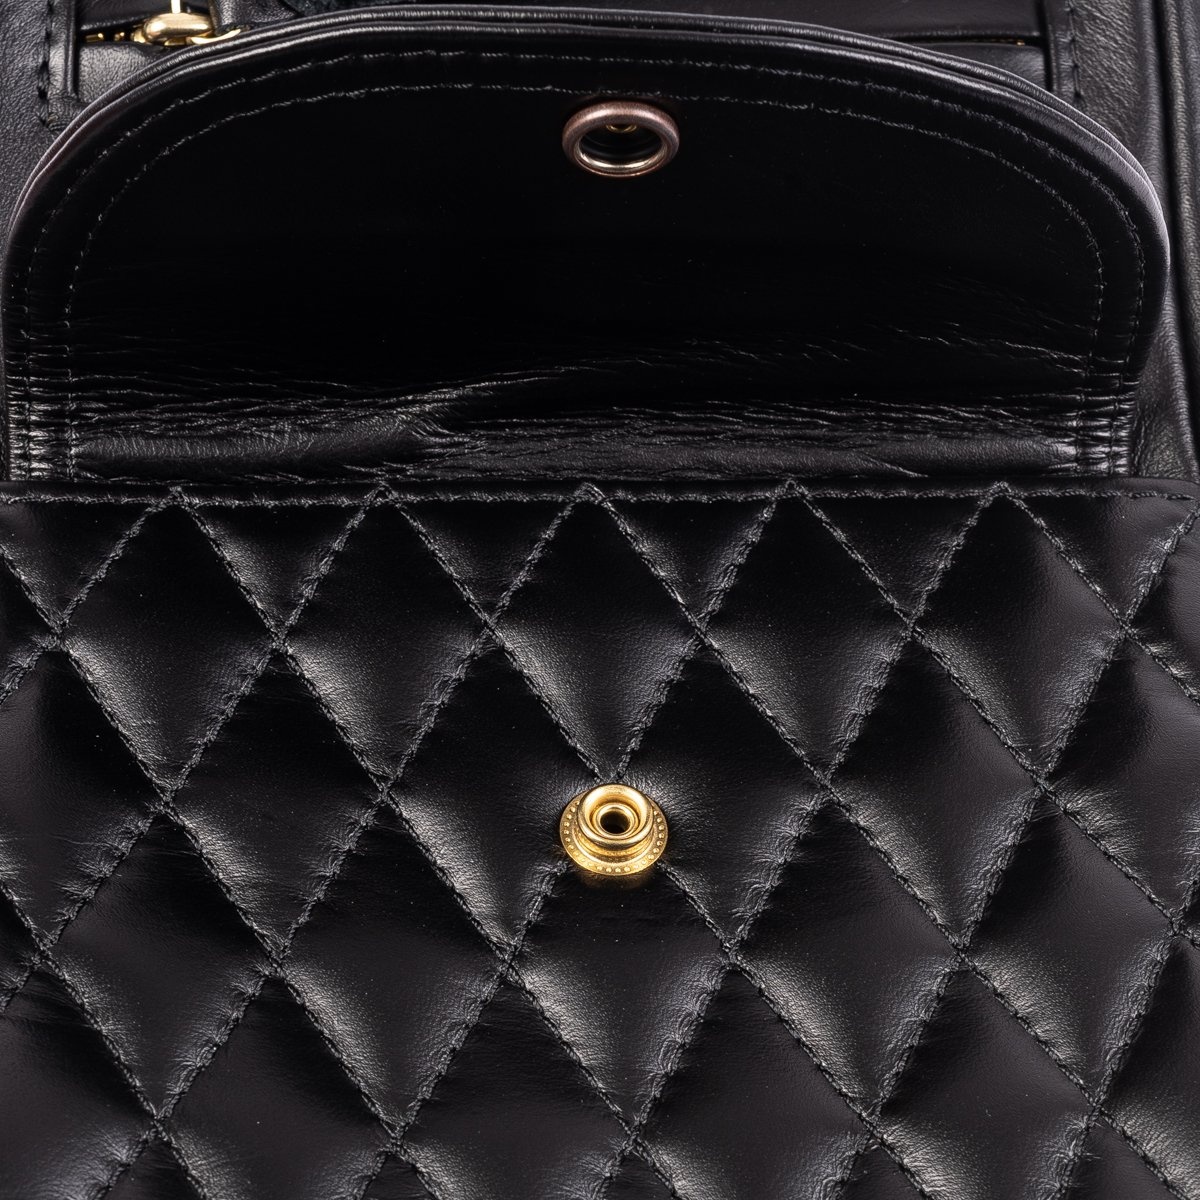 IHE-40-BLK Rectangular Leather Diamond Stitched Shoulder Bag - Black - 11